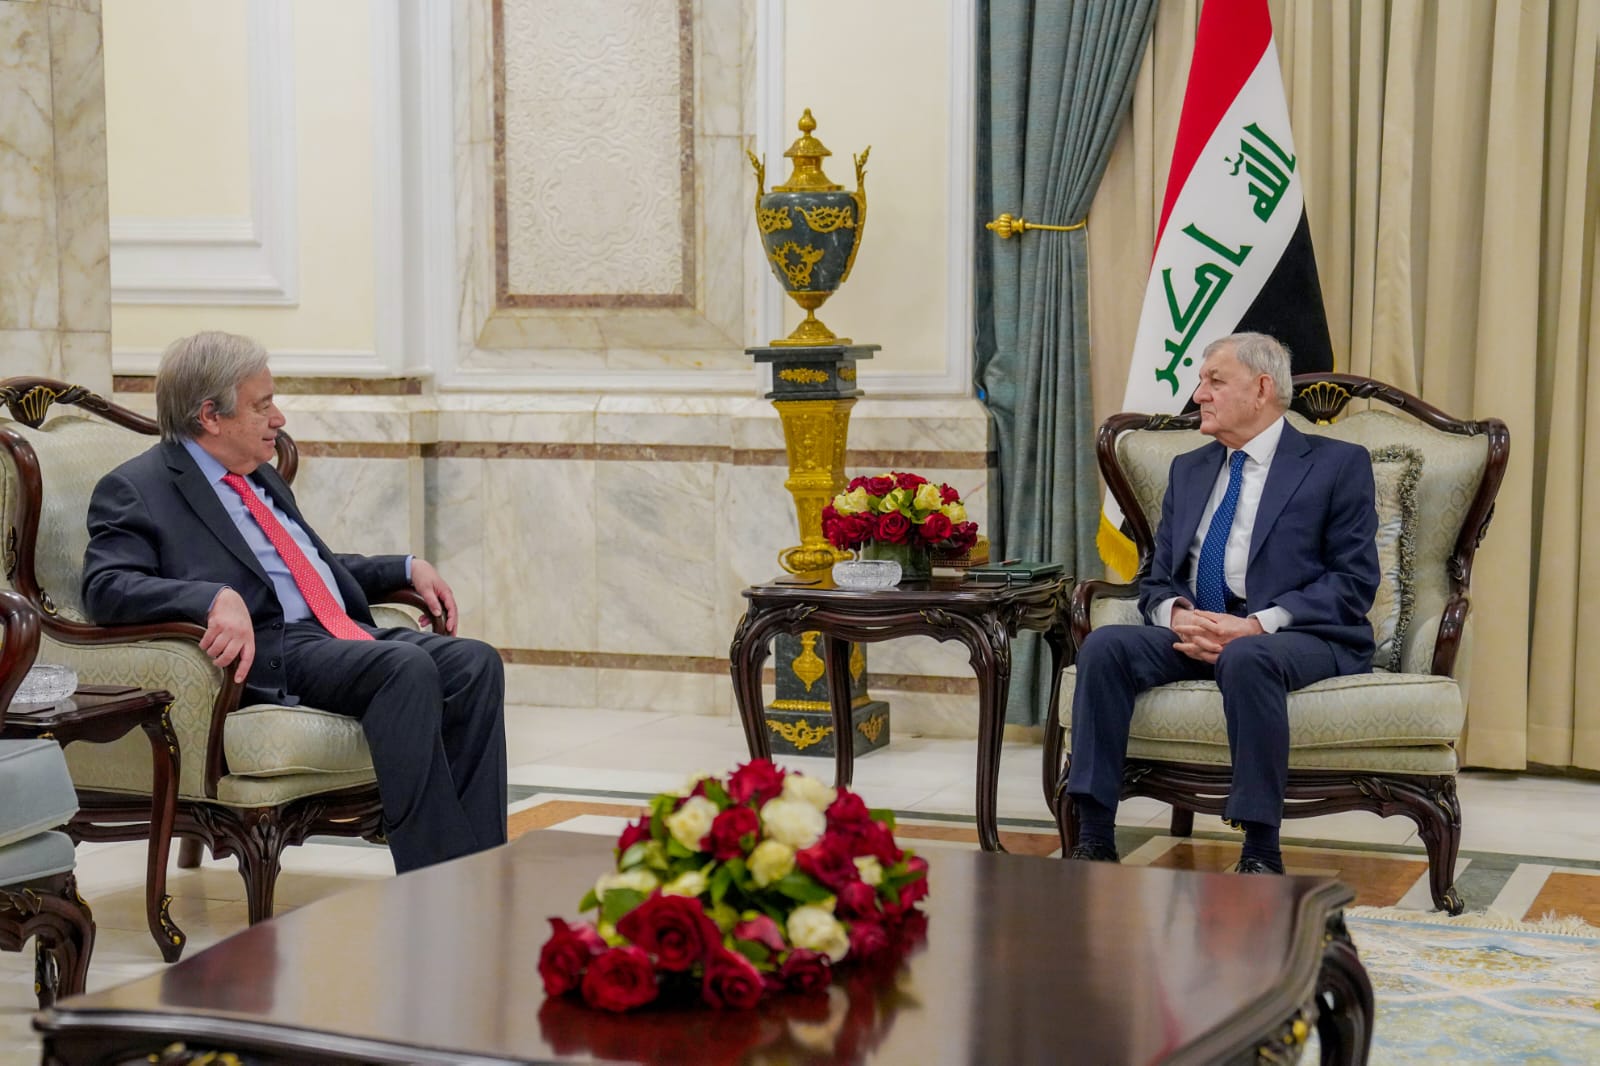 غوتيريش للرئيس العراقي: الظروف قد تغيرت نحو الأفضل